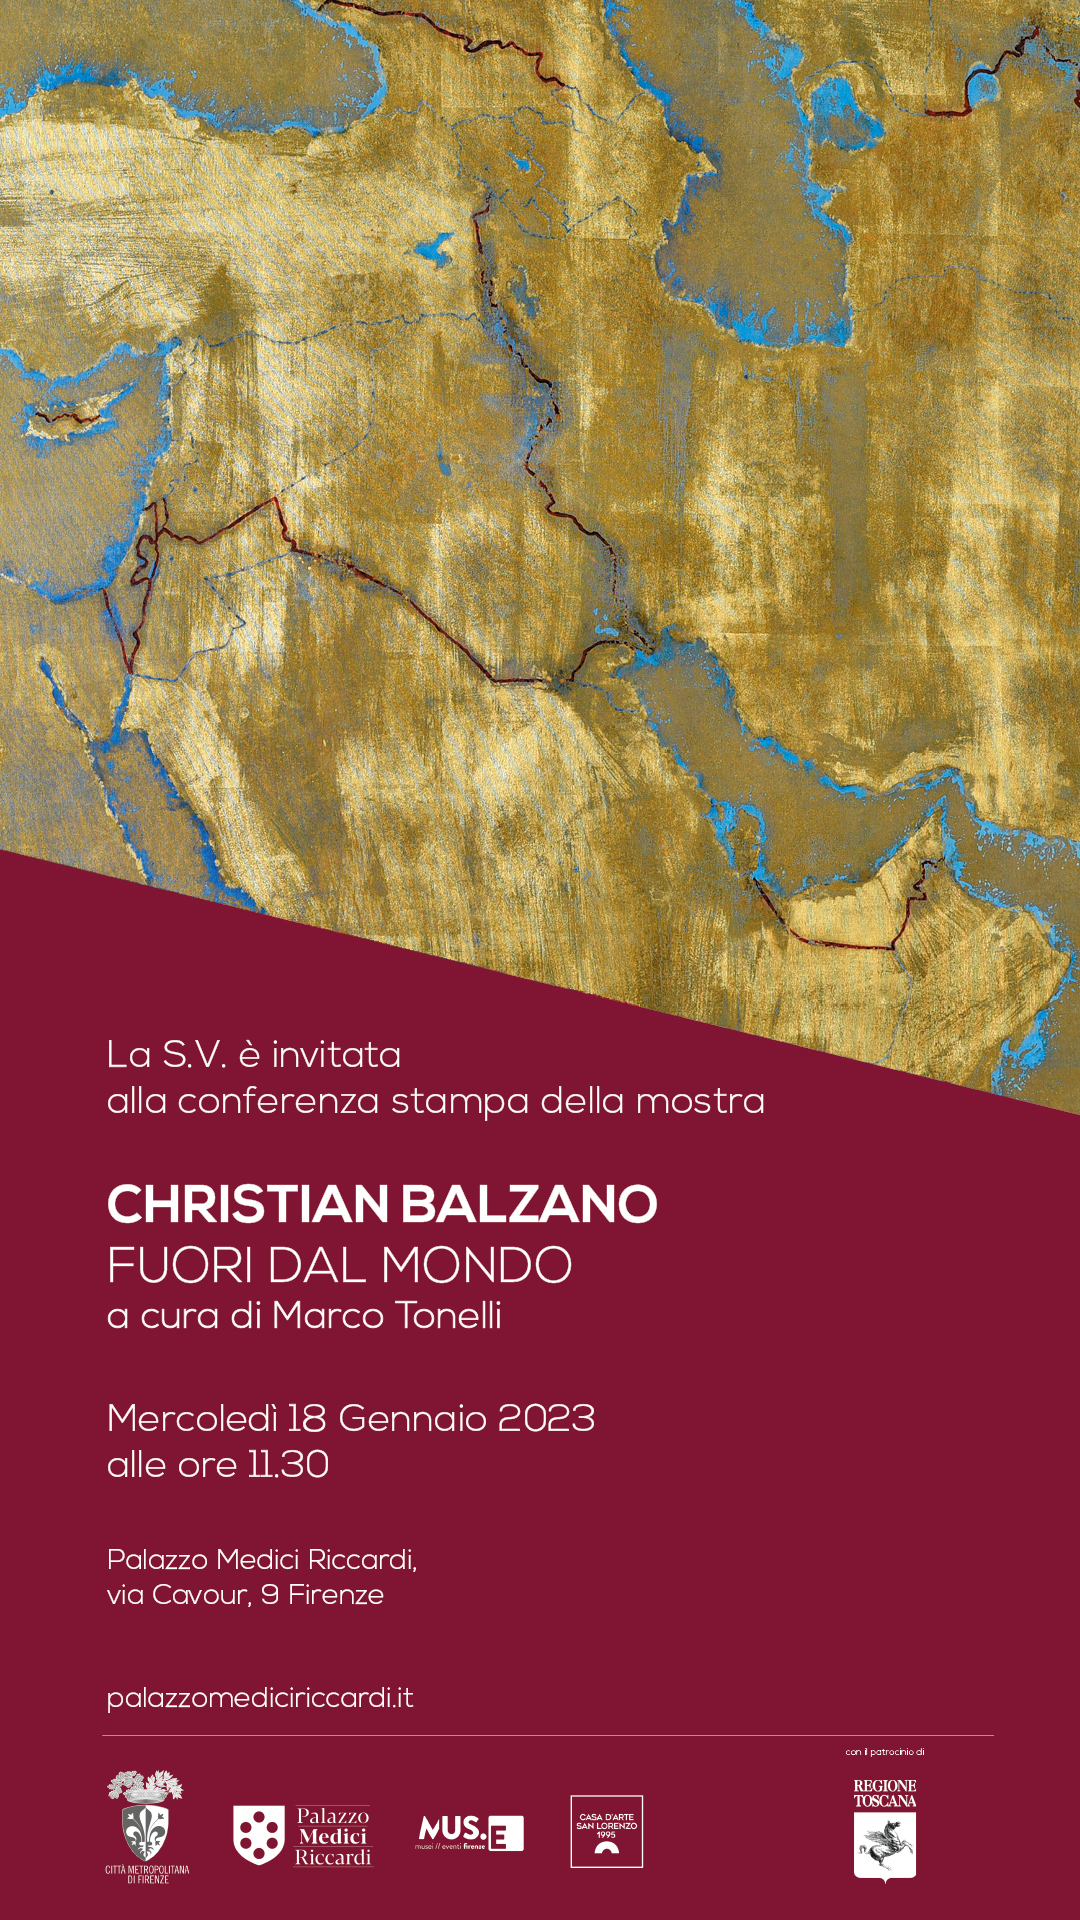 L'invito per la conferenza stampa di presentazione e inaugurazione della mostra di Christian Balzano